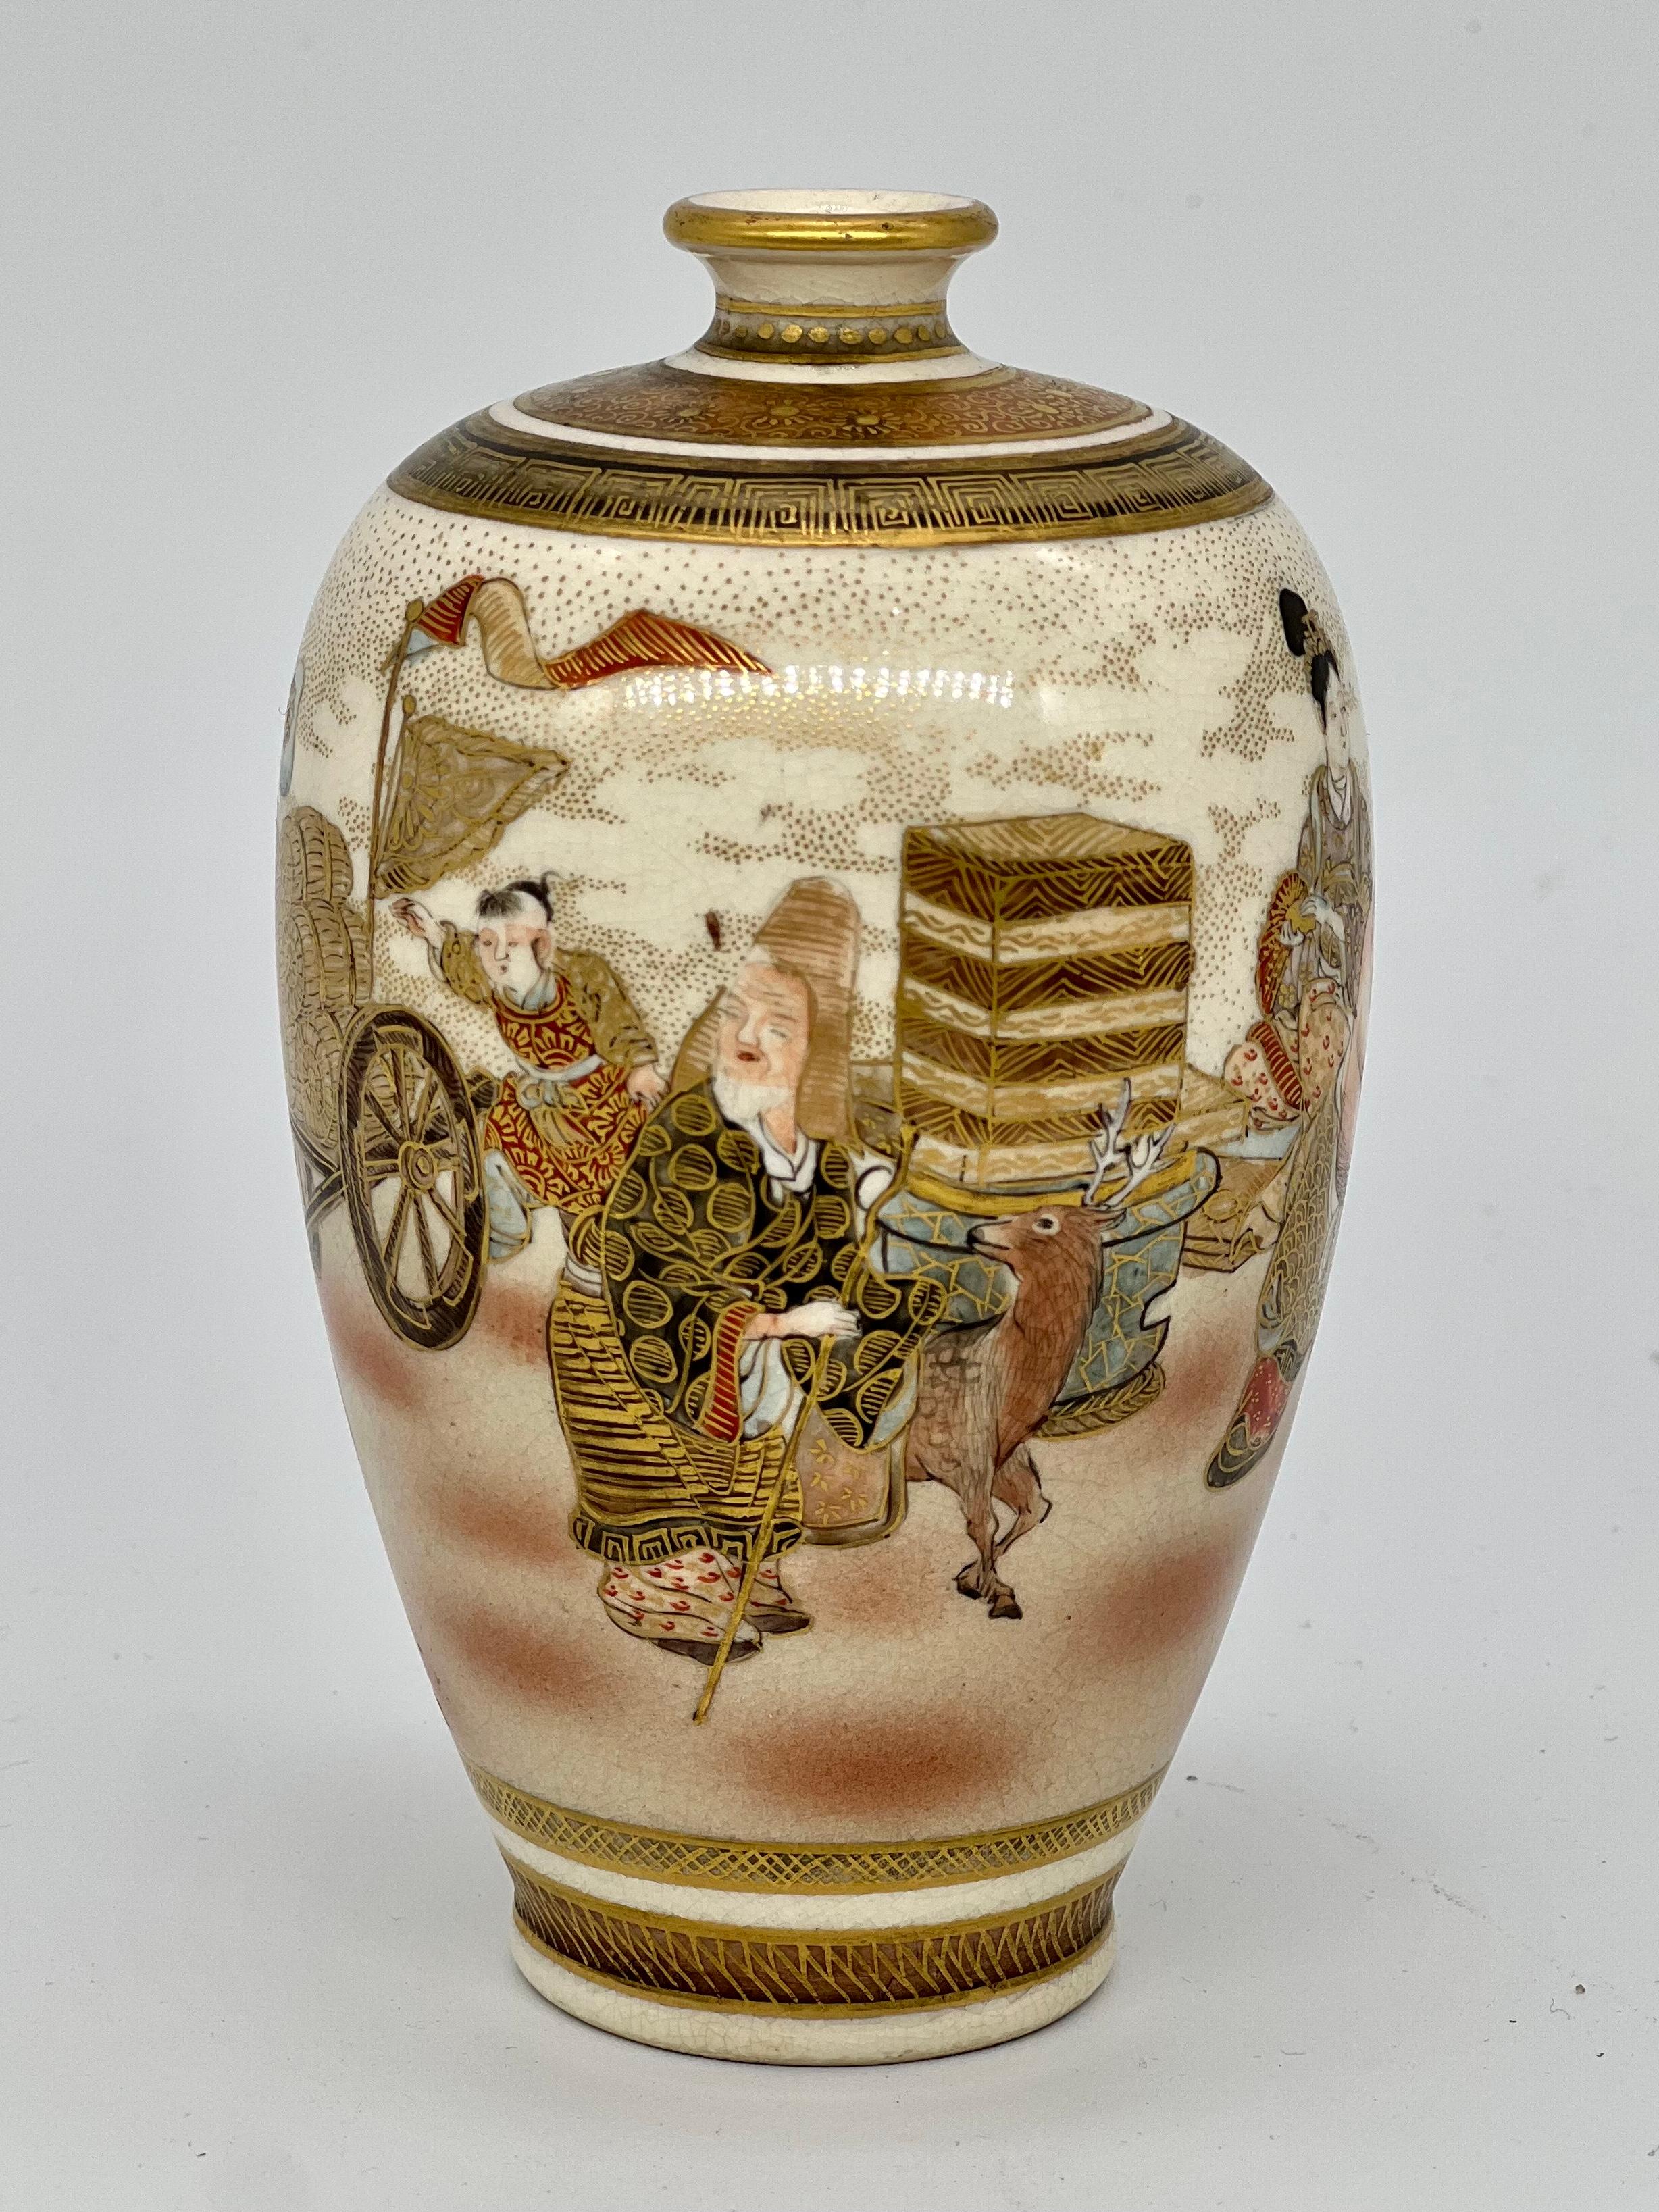 Eine feine antike japanische Satsuma Vase. Unterschrieben - Dozan. Meiji-Ära (1868-1912), Ende des 19. Jahrhunderts.

Emailliert und vergoldet mit einer fortlaufenden Szene, die die Shichifukujin (Sieben Glücksgötter) bei der Herstellung von Mochi